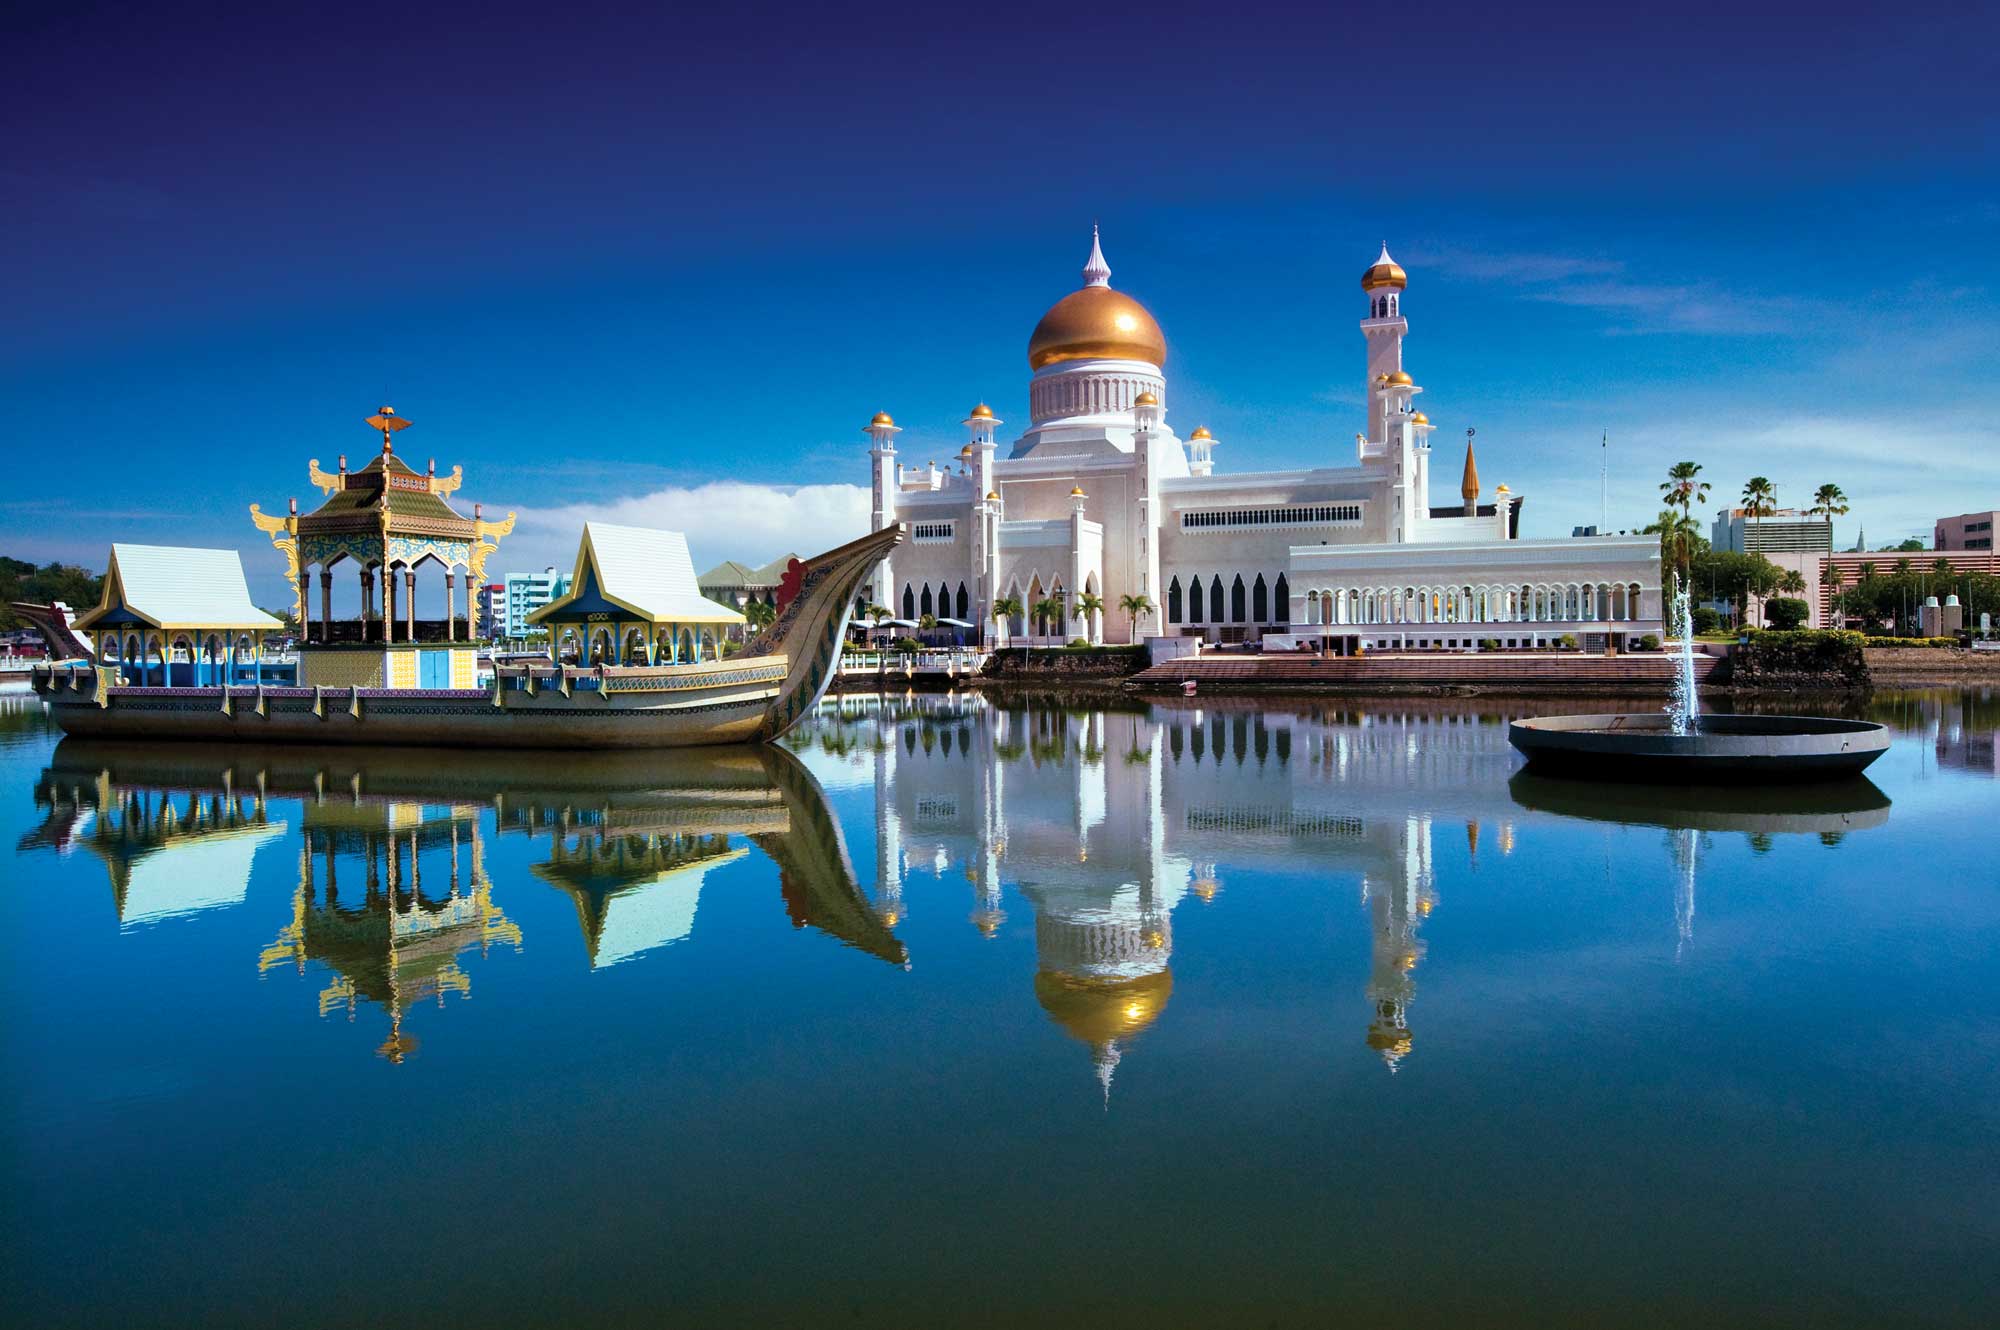 Kinh nghiệm du lịch Brunei – Deks Air Travel